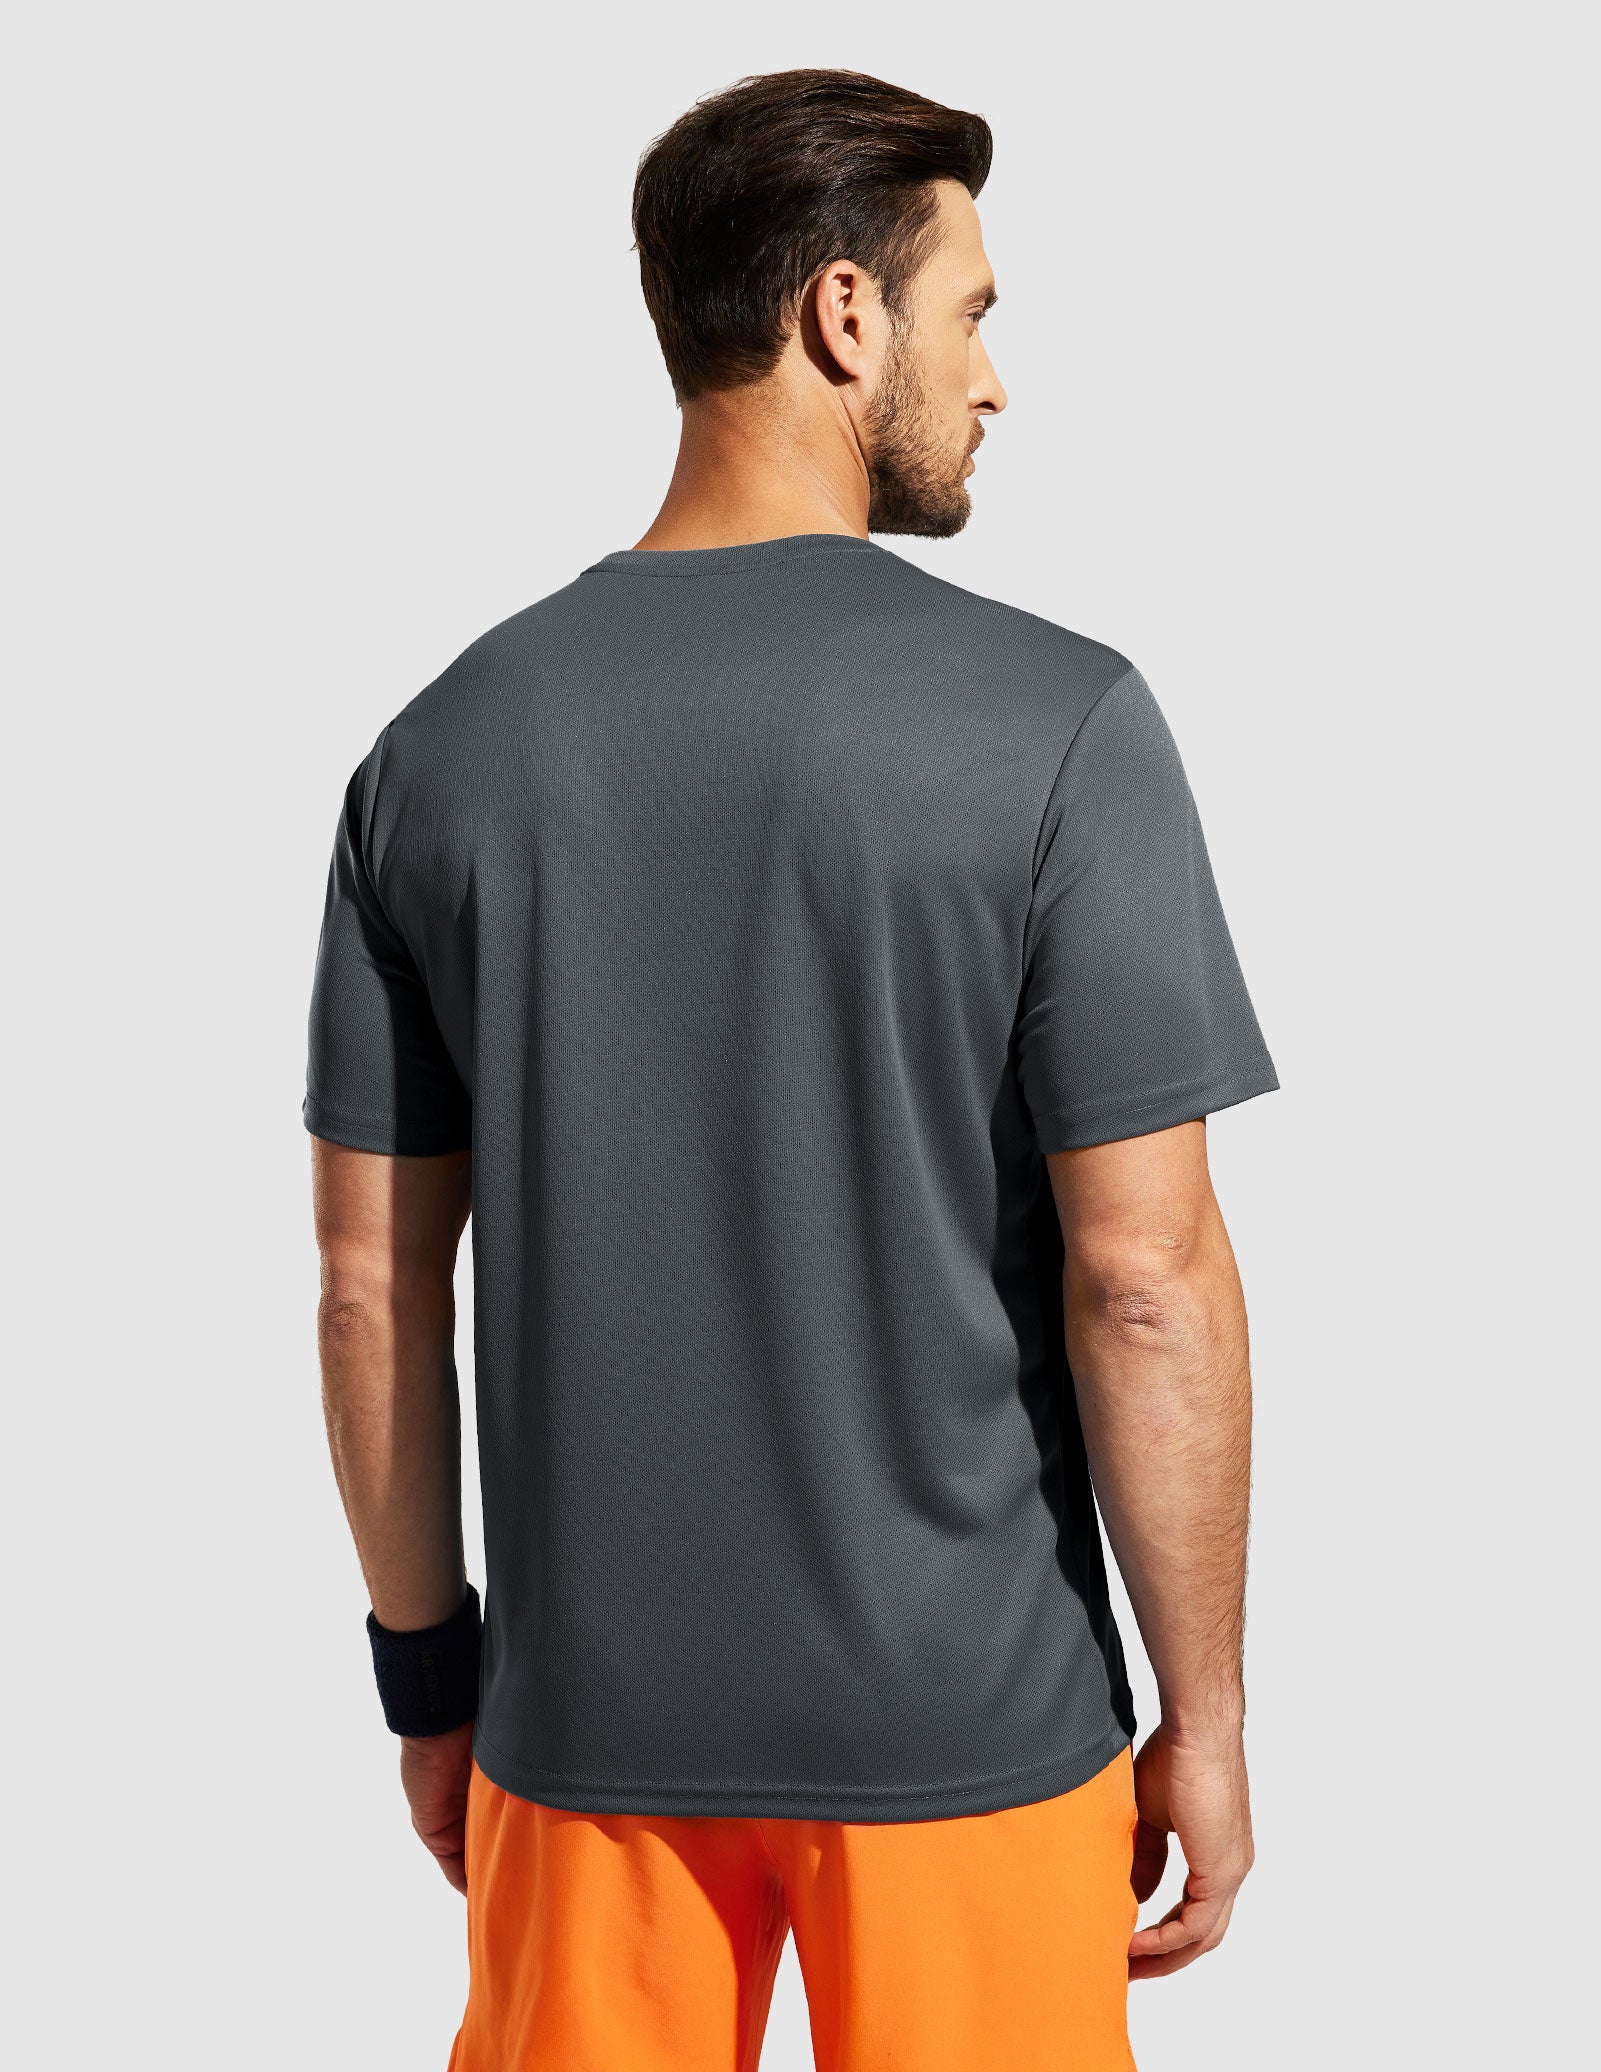 T-shirts d'entraînement Dry Fit pour hommes pour la course sportive